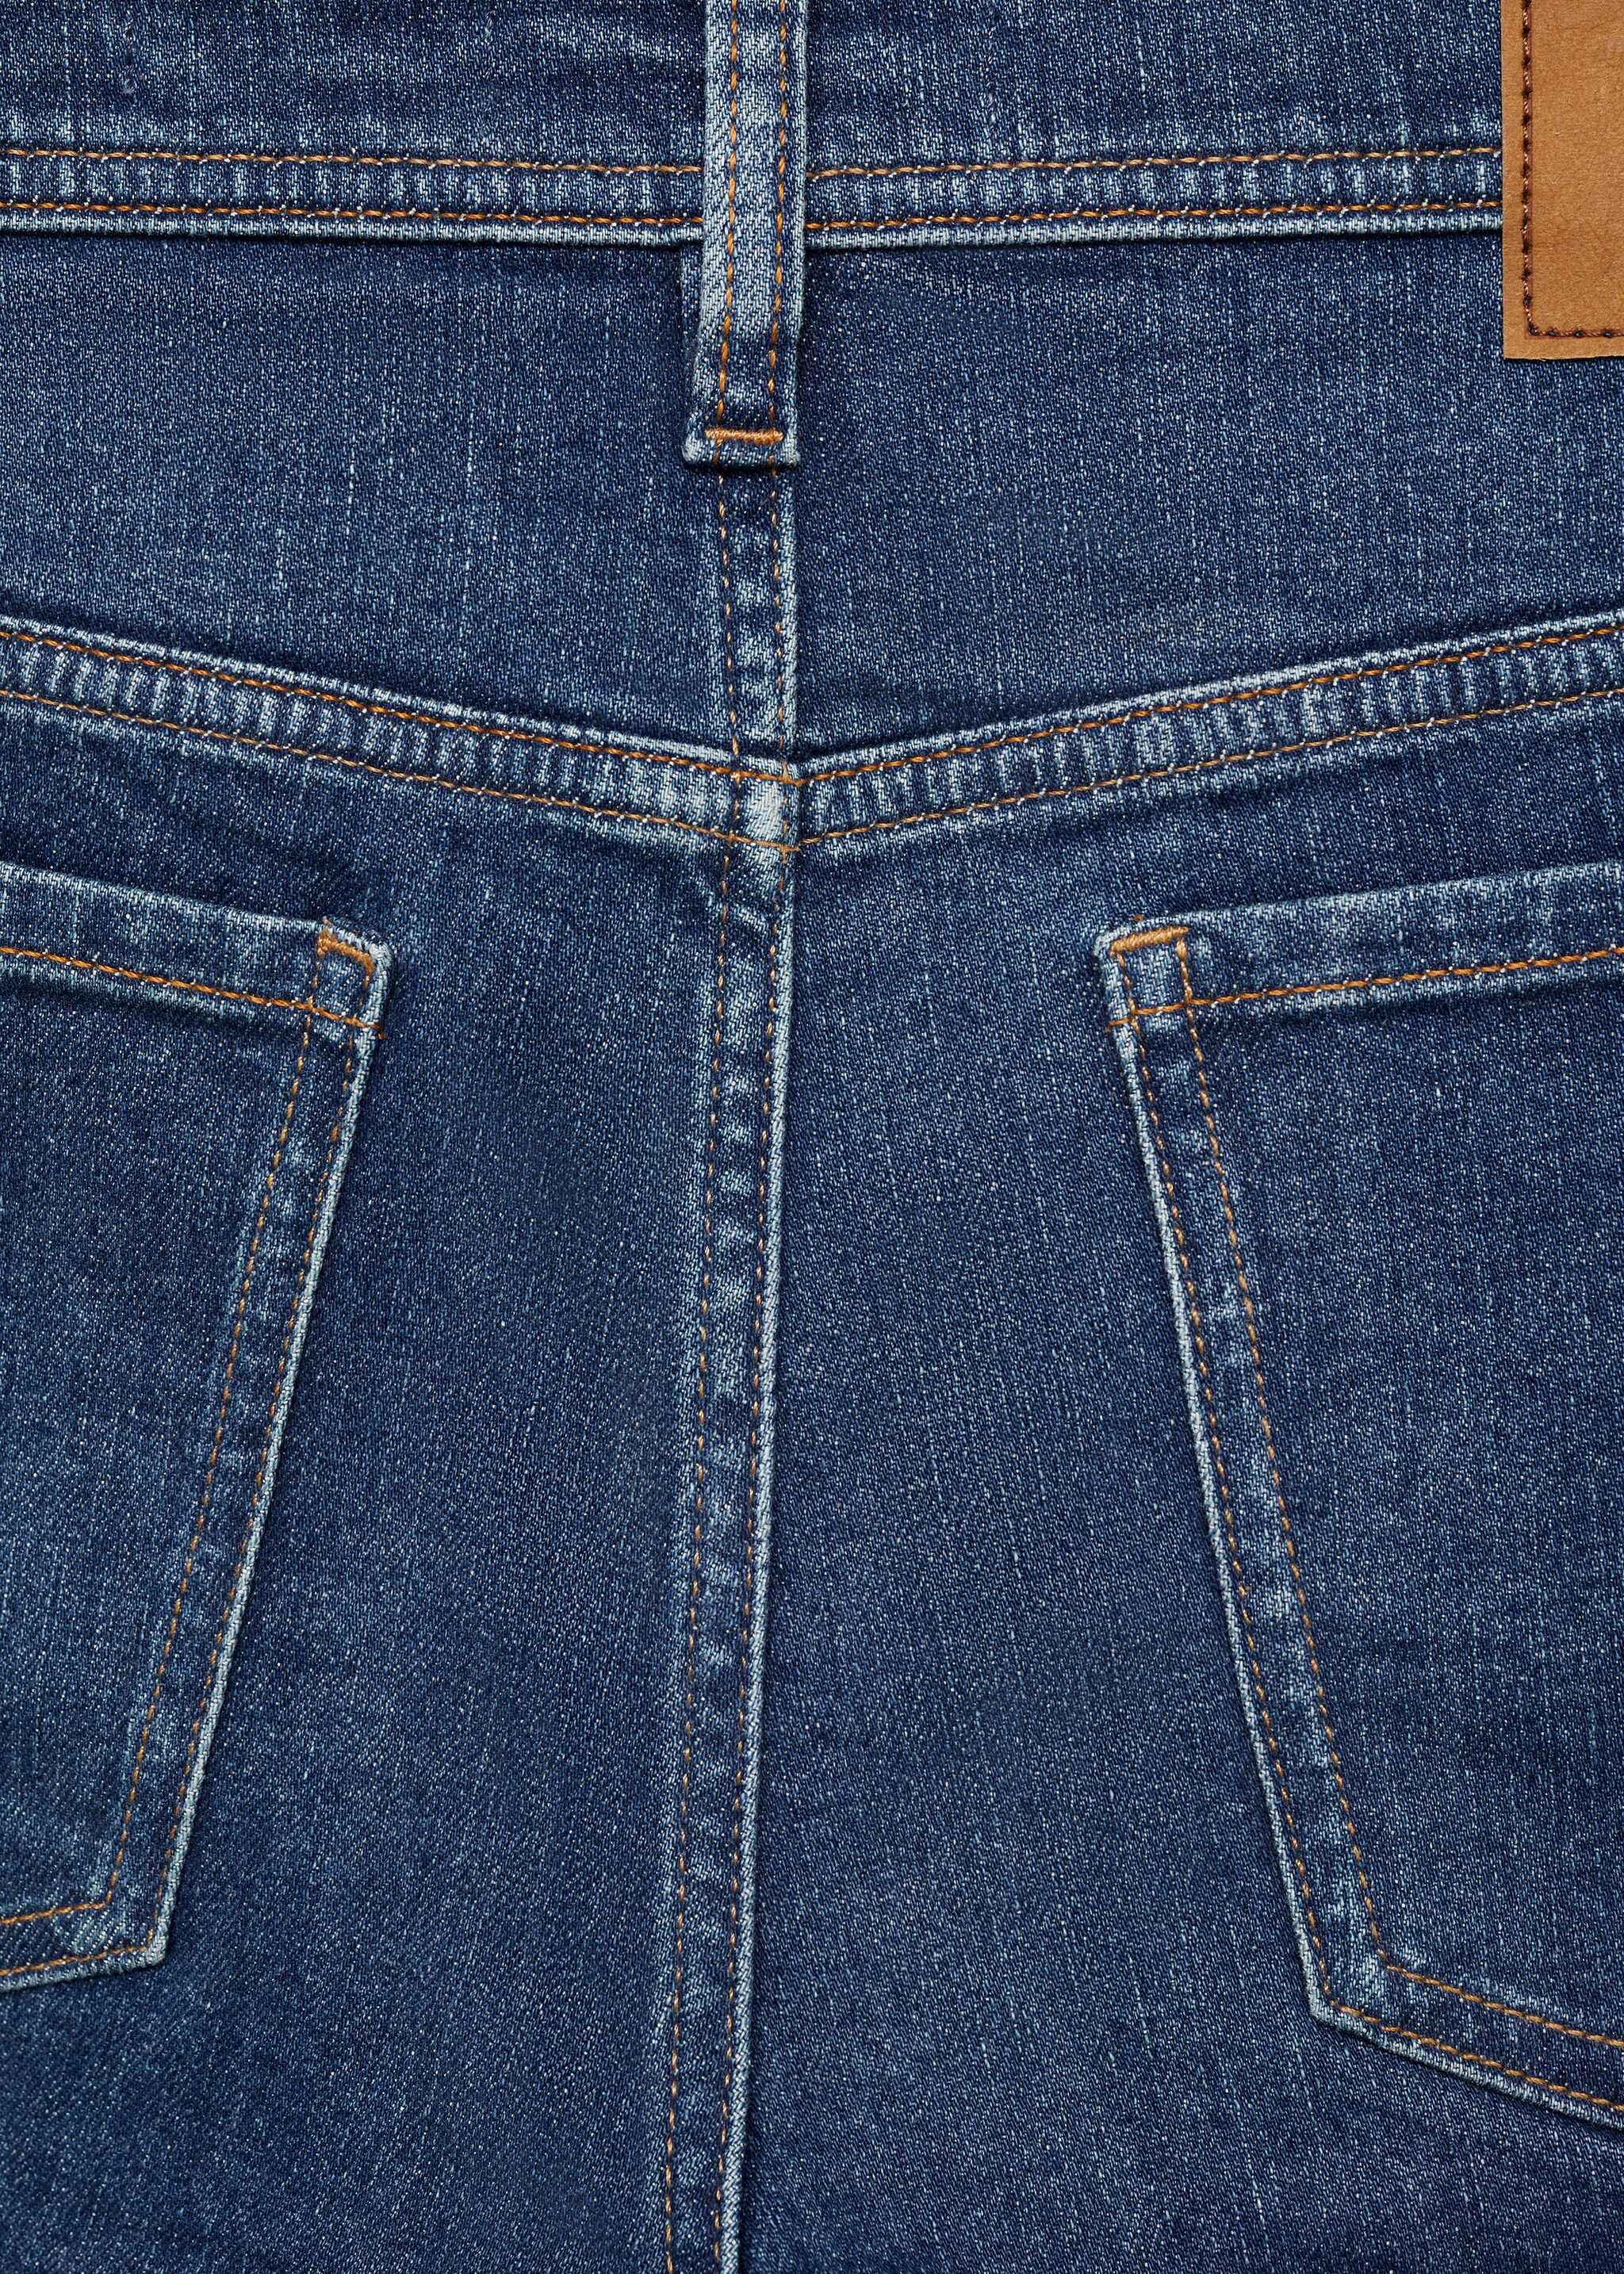 Jeans Jan slim fit - Pormenor do artigo 0